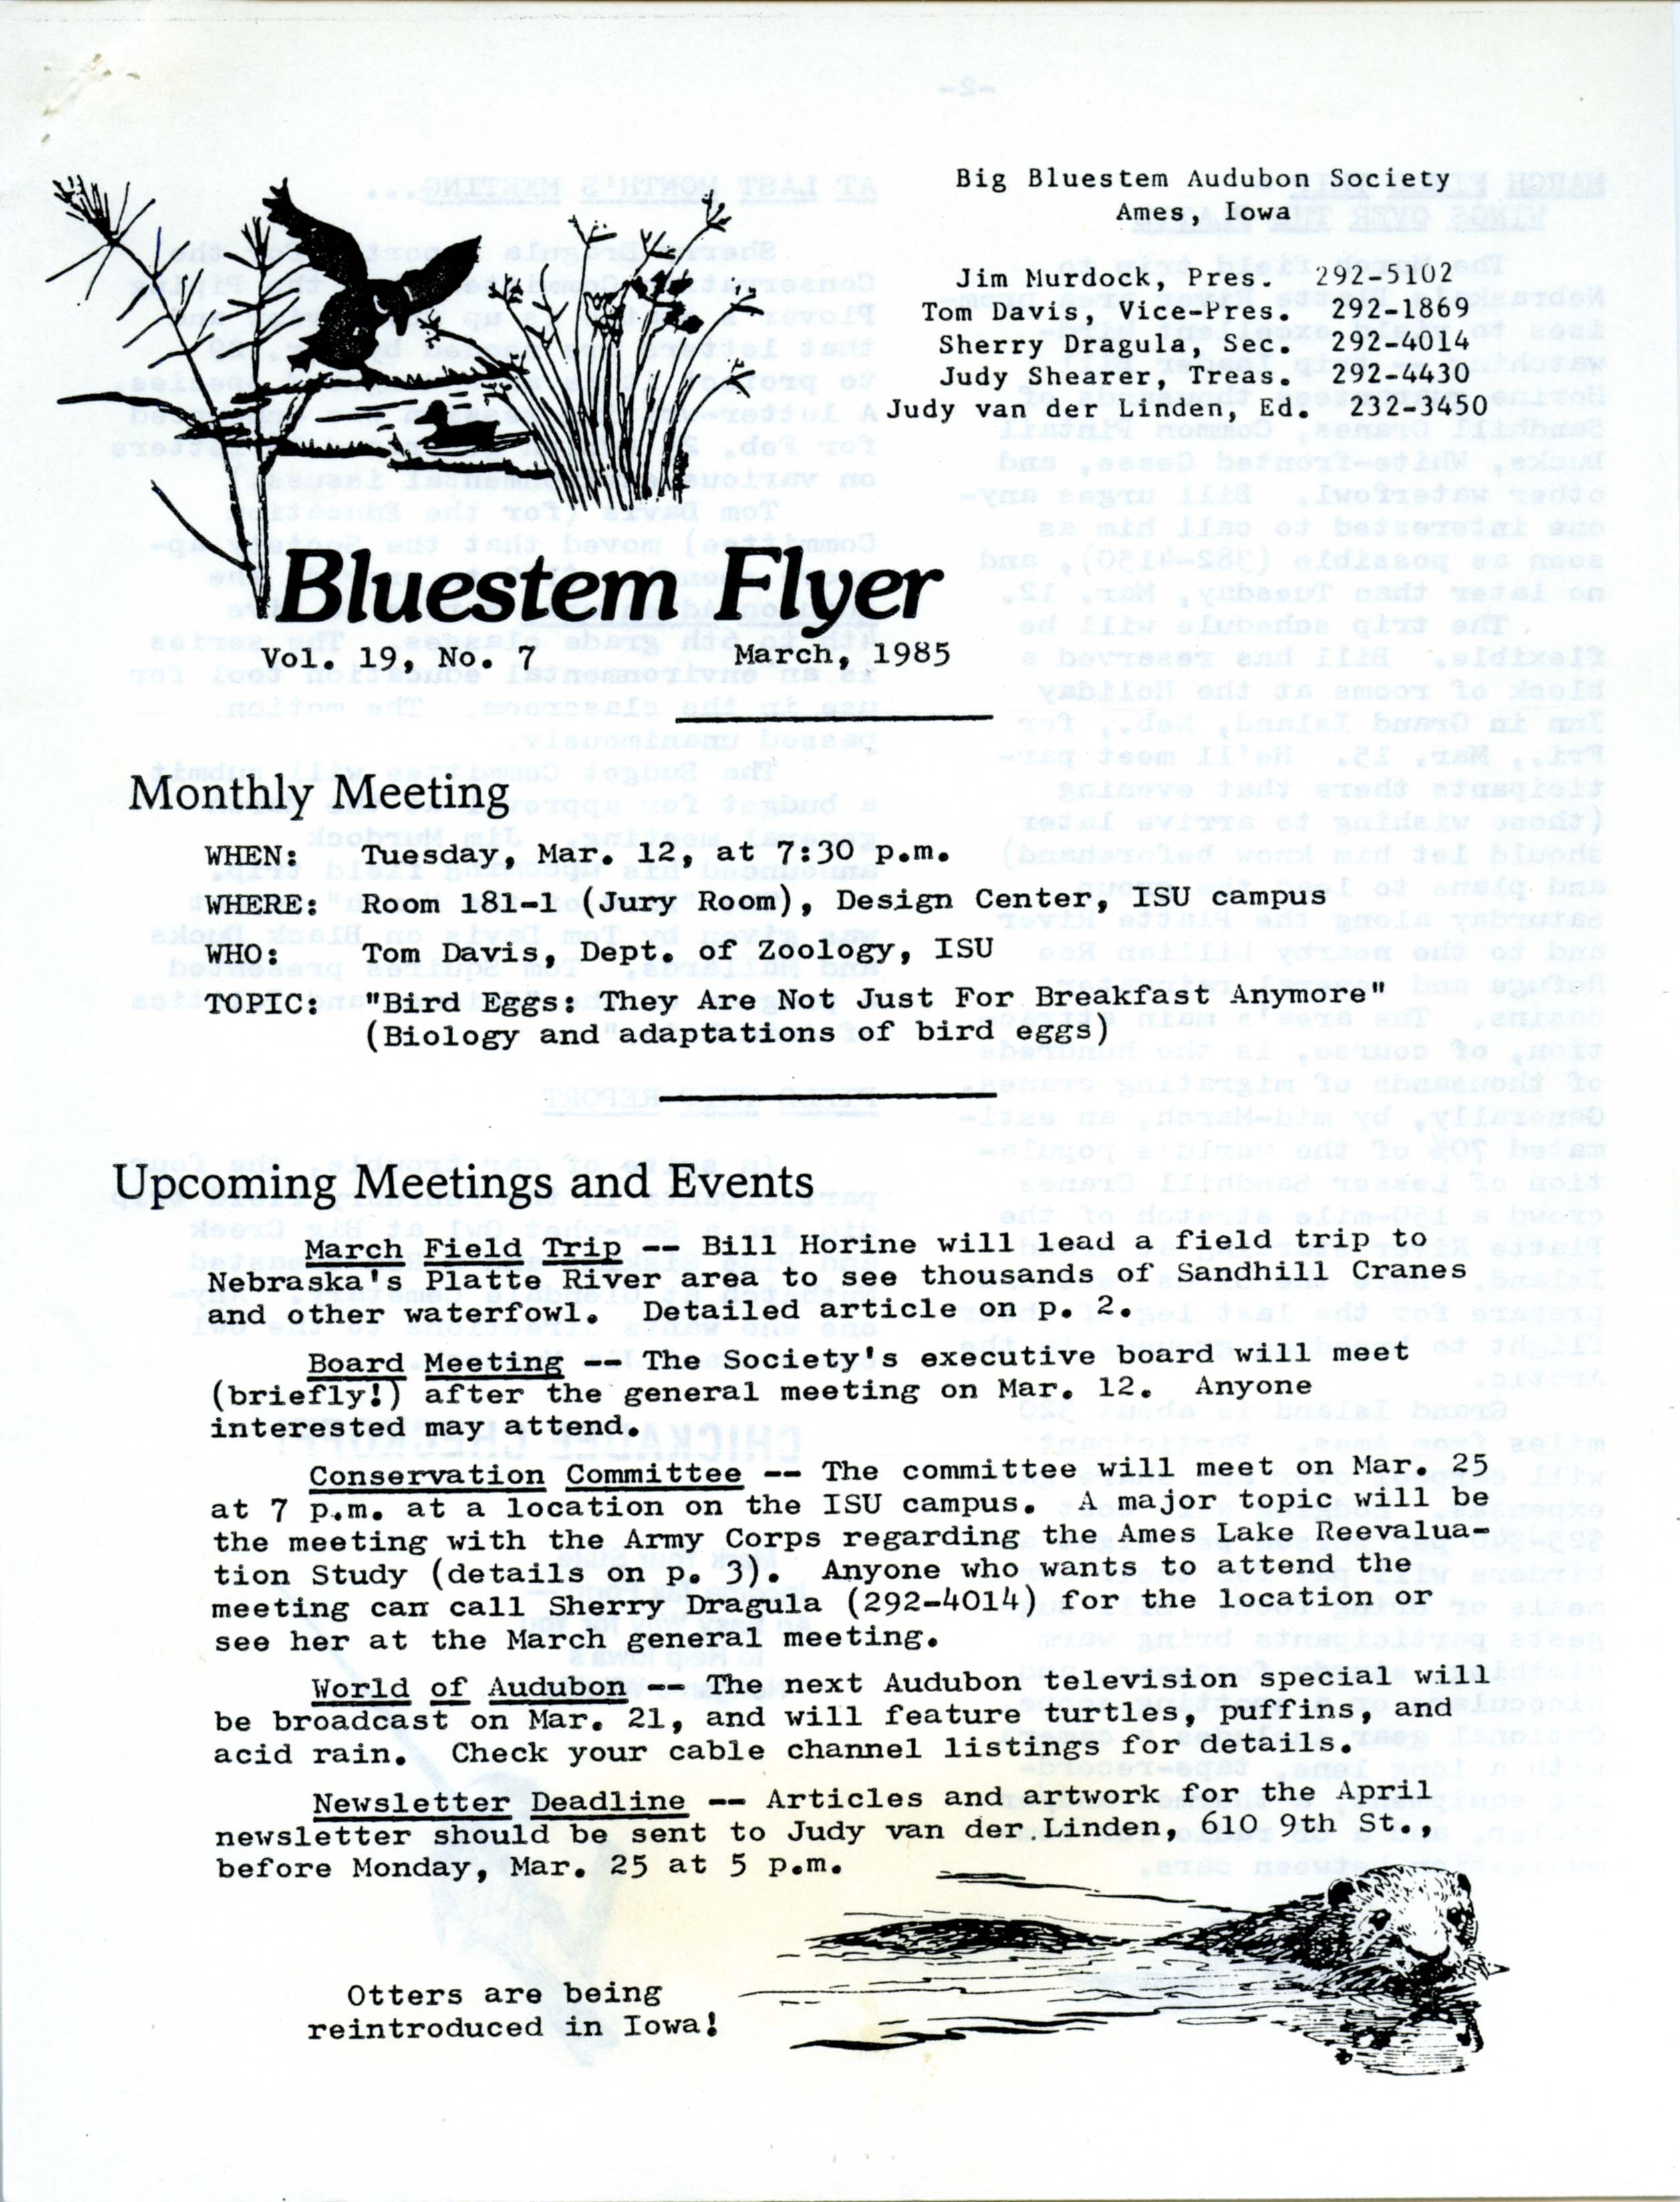 Bluestem Flyer, Volume 19, Number 7, March 1985